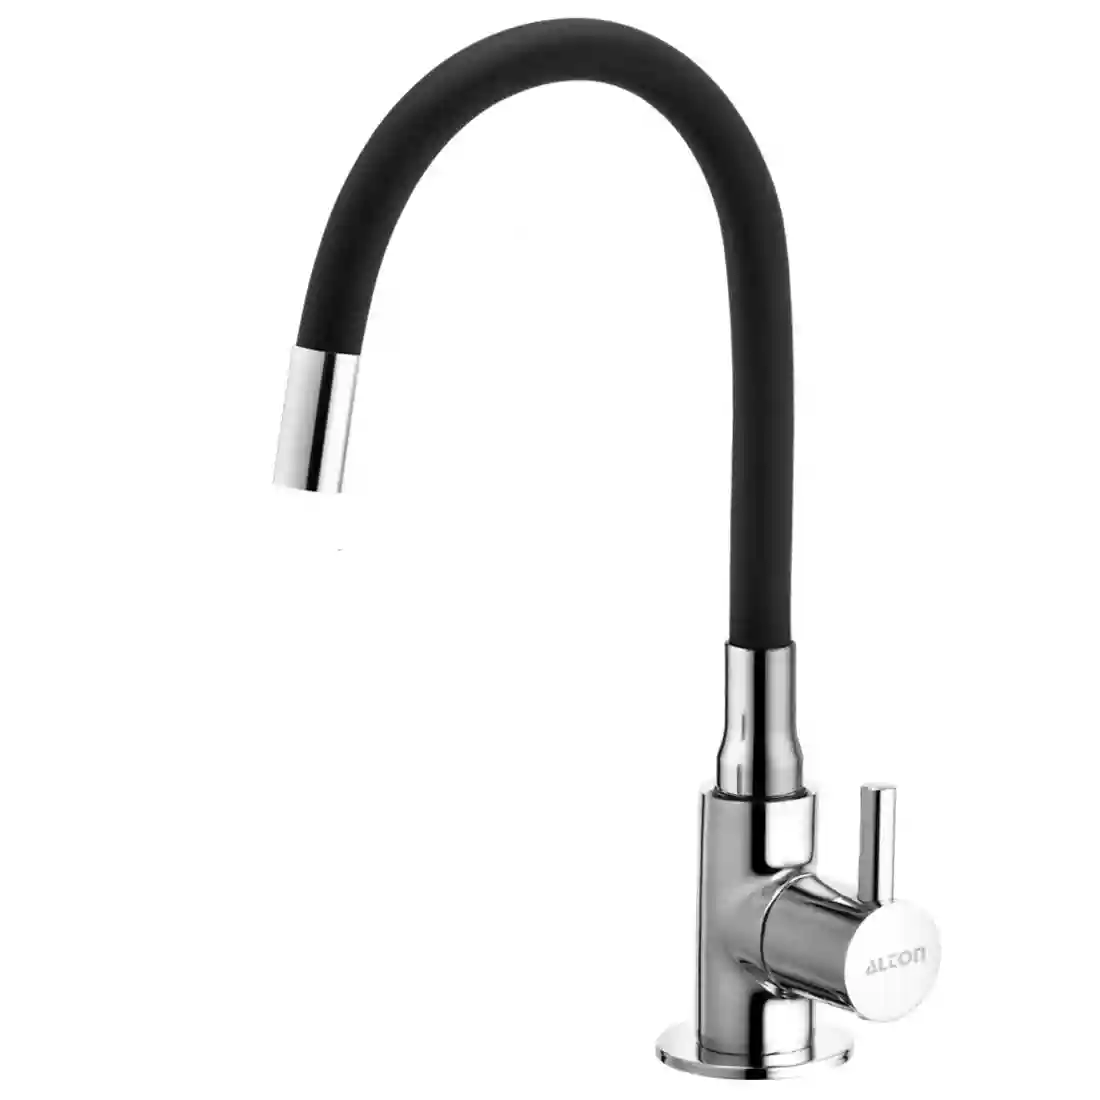 ALTON GRC3756, Brass Swan Neck with Flexible Swivel Spout, Black & Chrome Finish (Single Flow) 